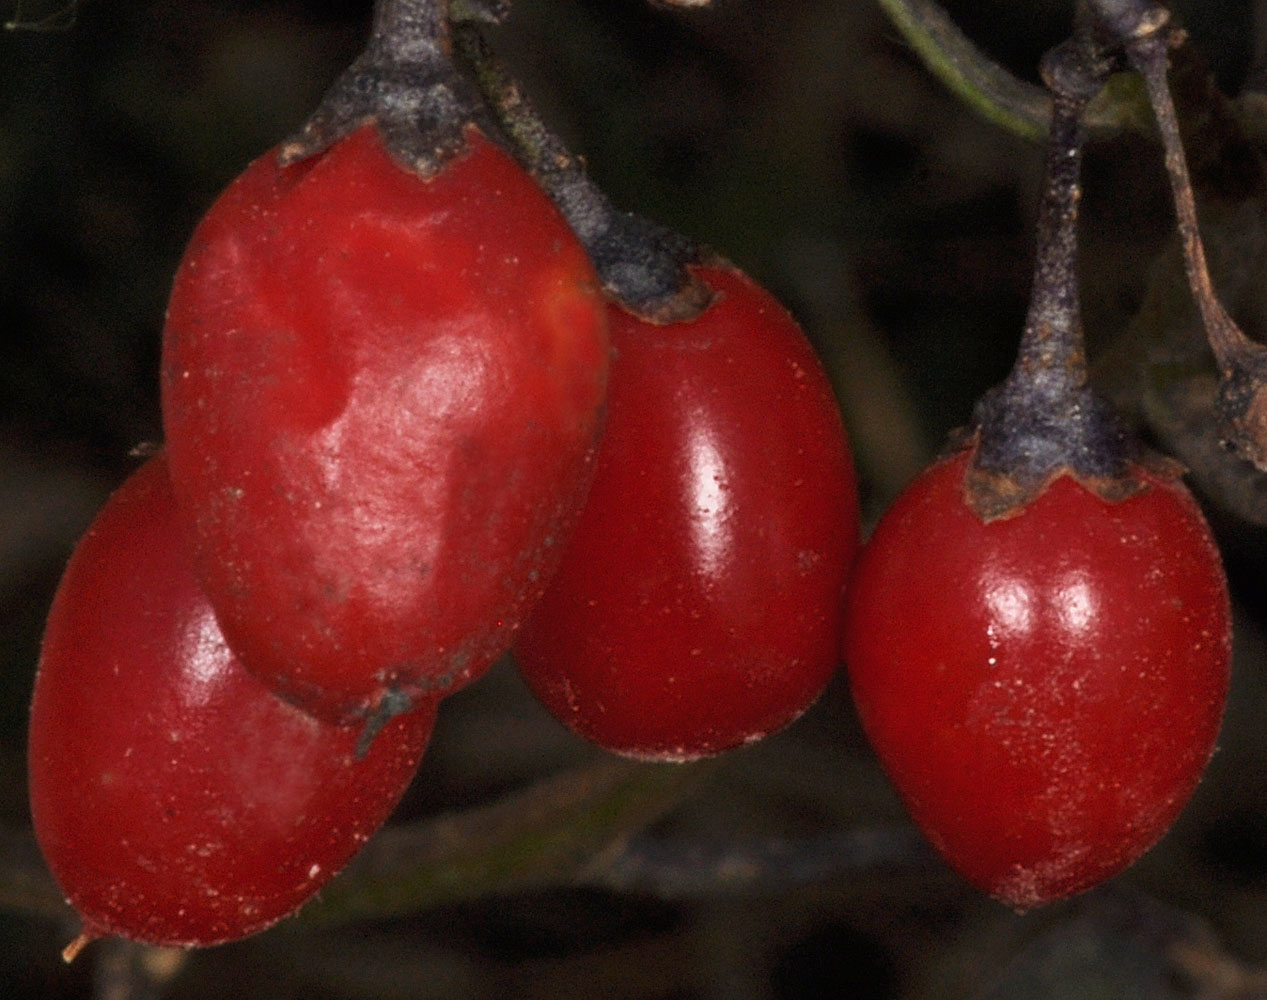 Flora of Eastern Washington Image: Solanum dulcamara